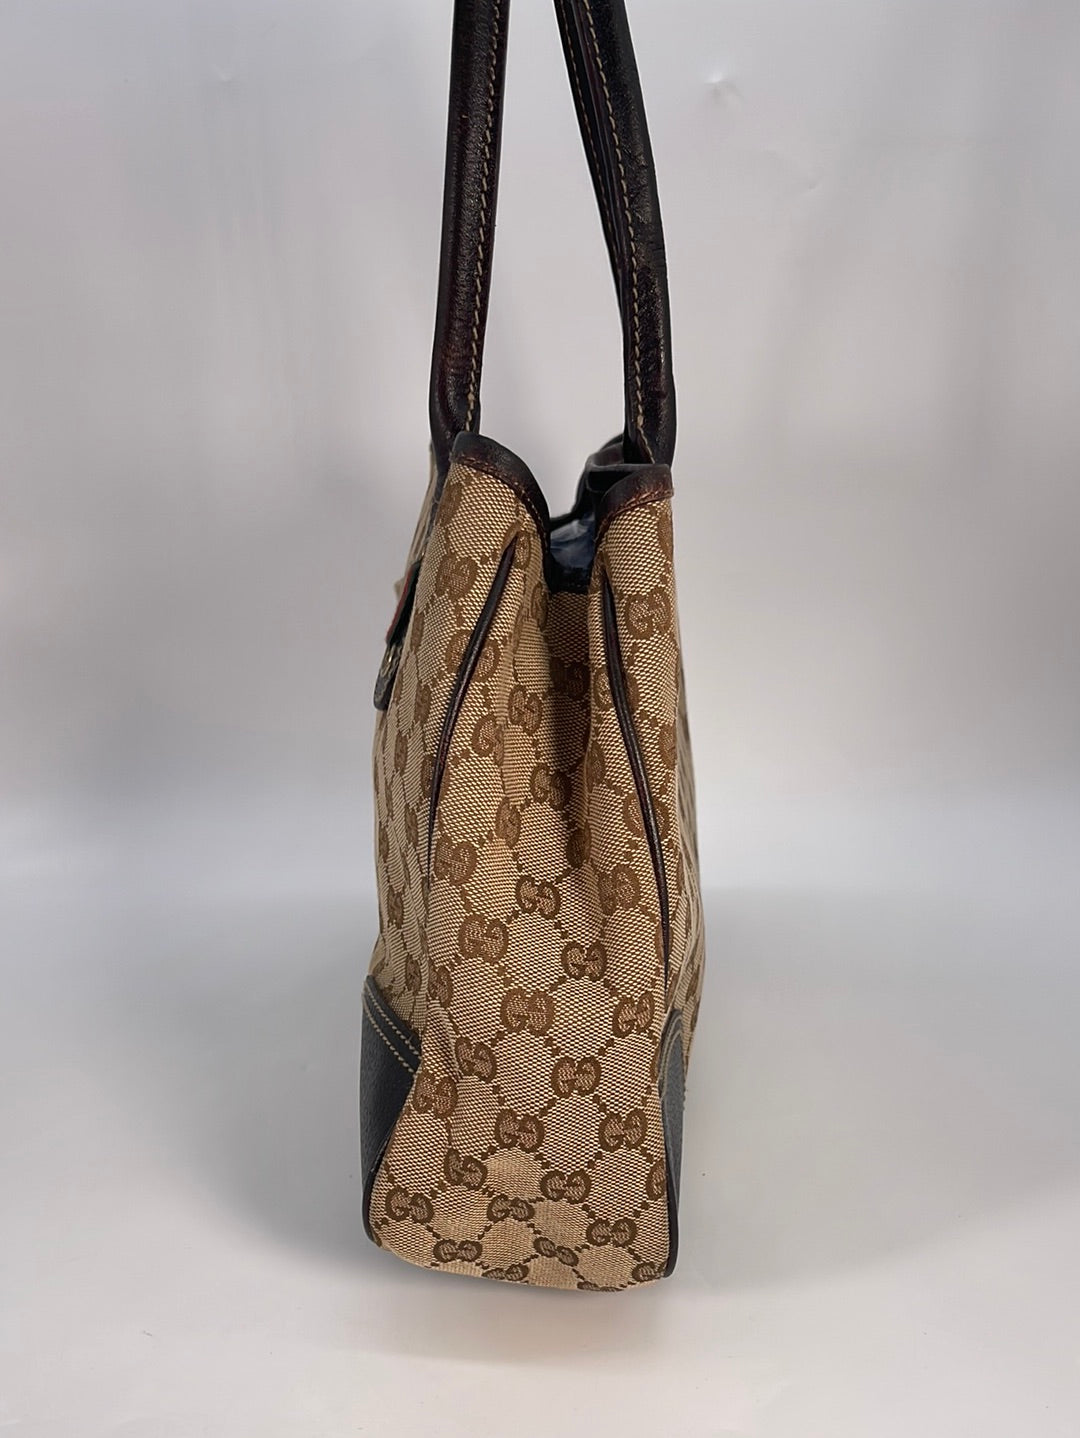 Vintage Gucci GG Canvas Princy Tote Bag 1638052123 020323